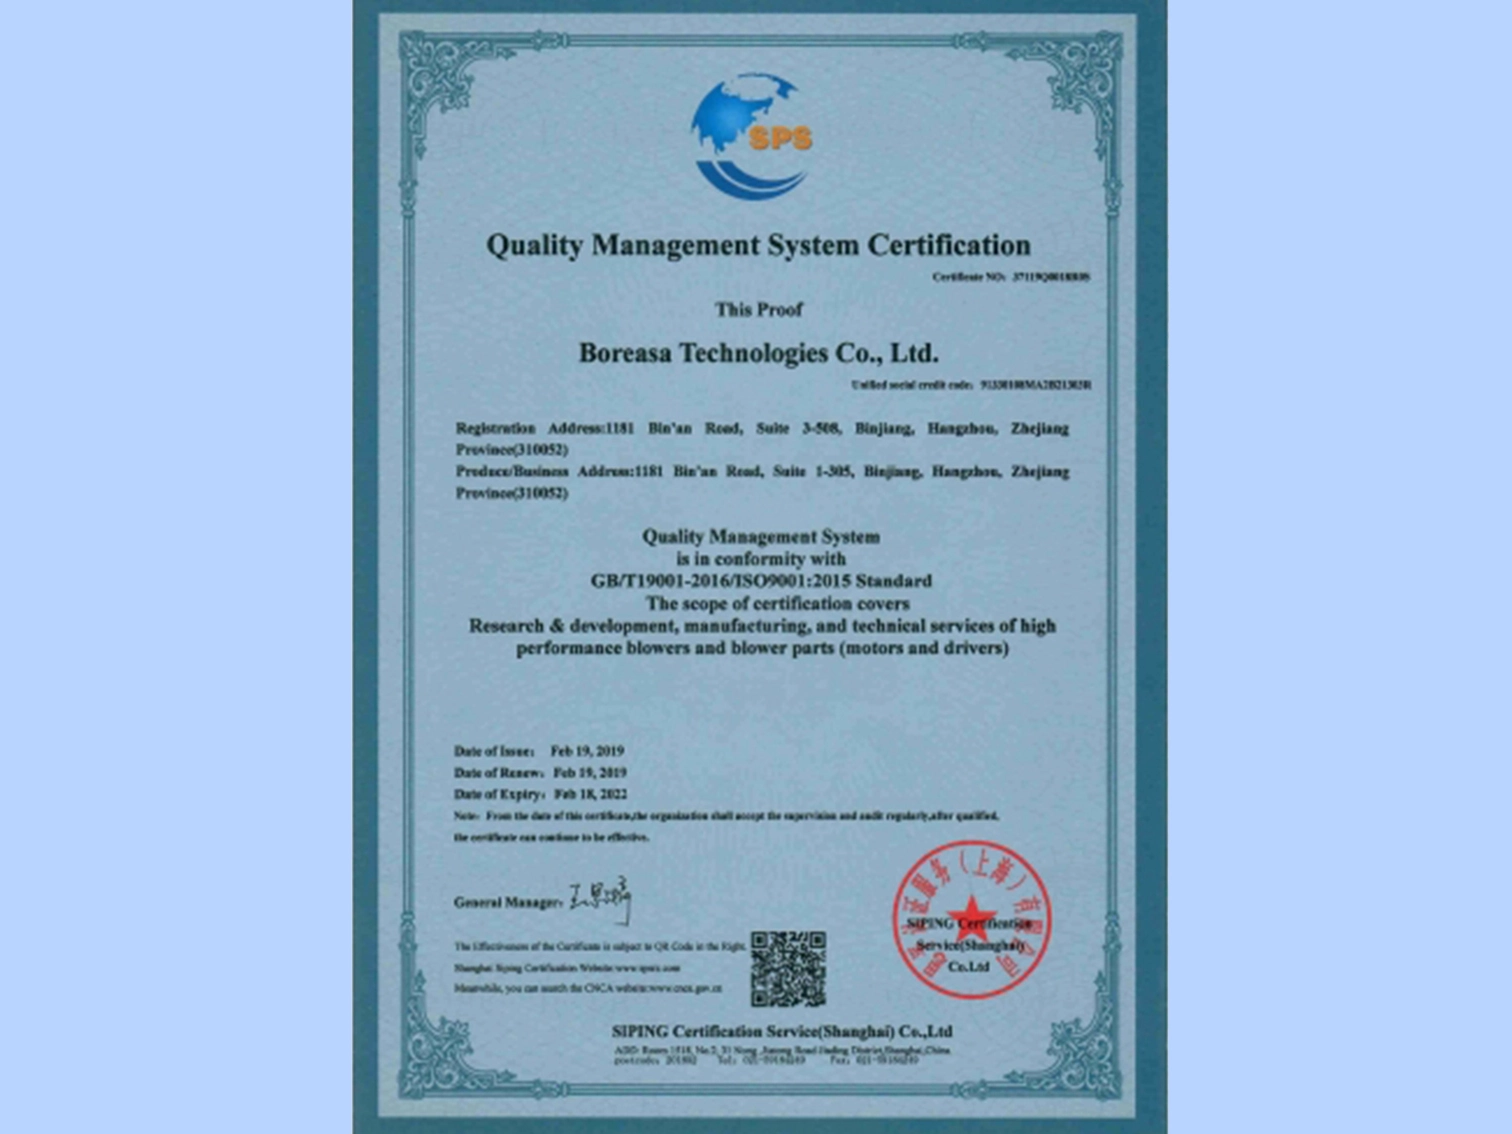 杭州贝丰科技有限公司获得 ISO9001:2015 标准认证